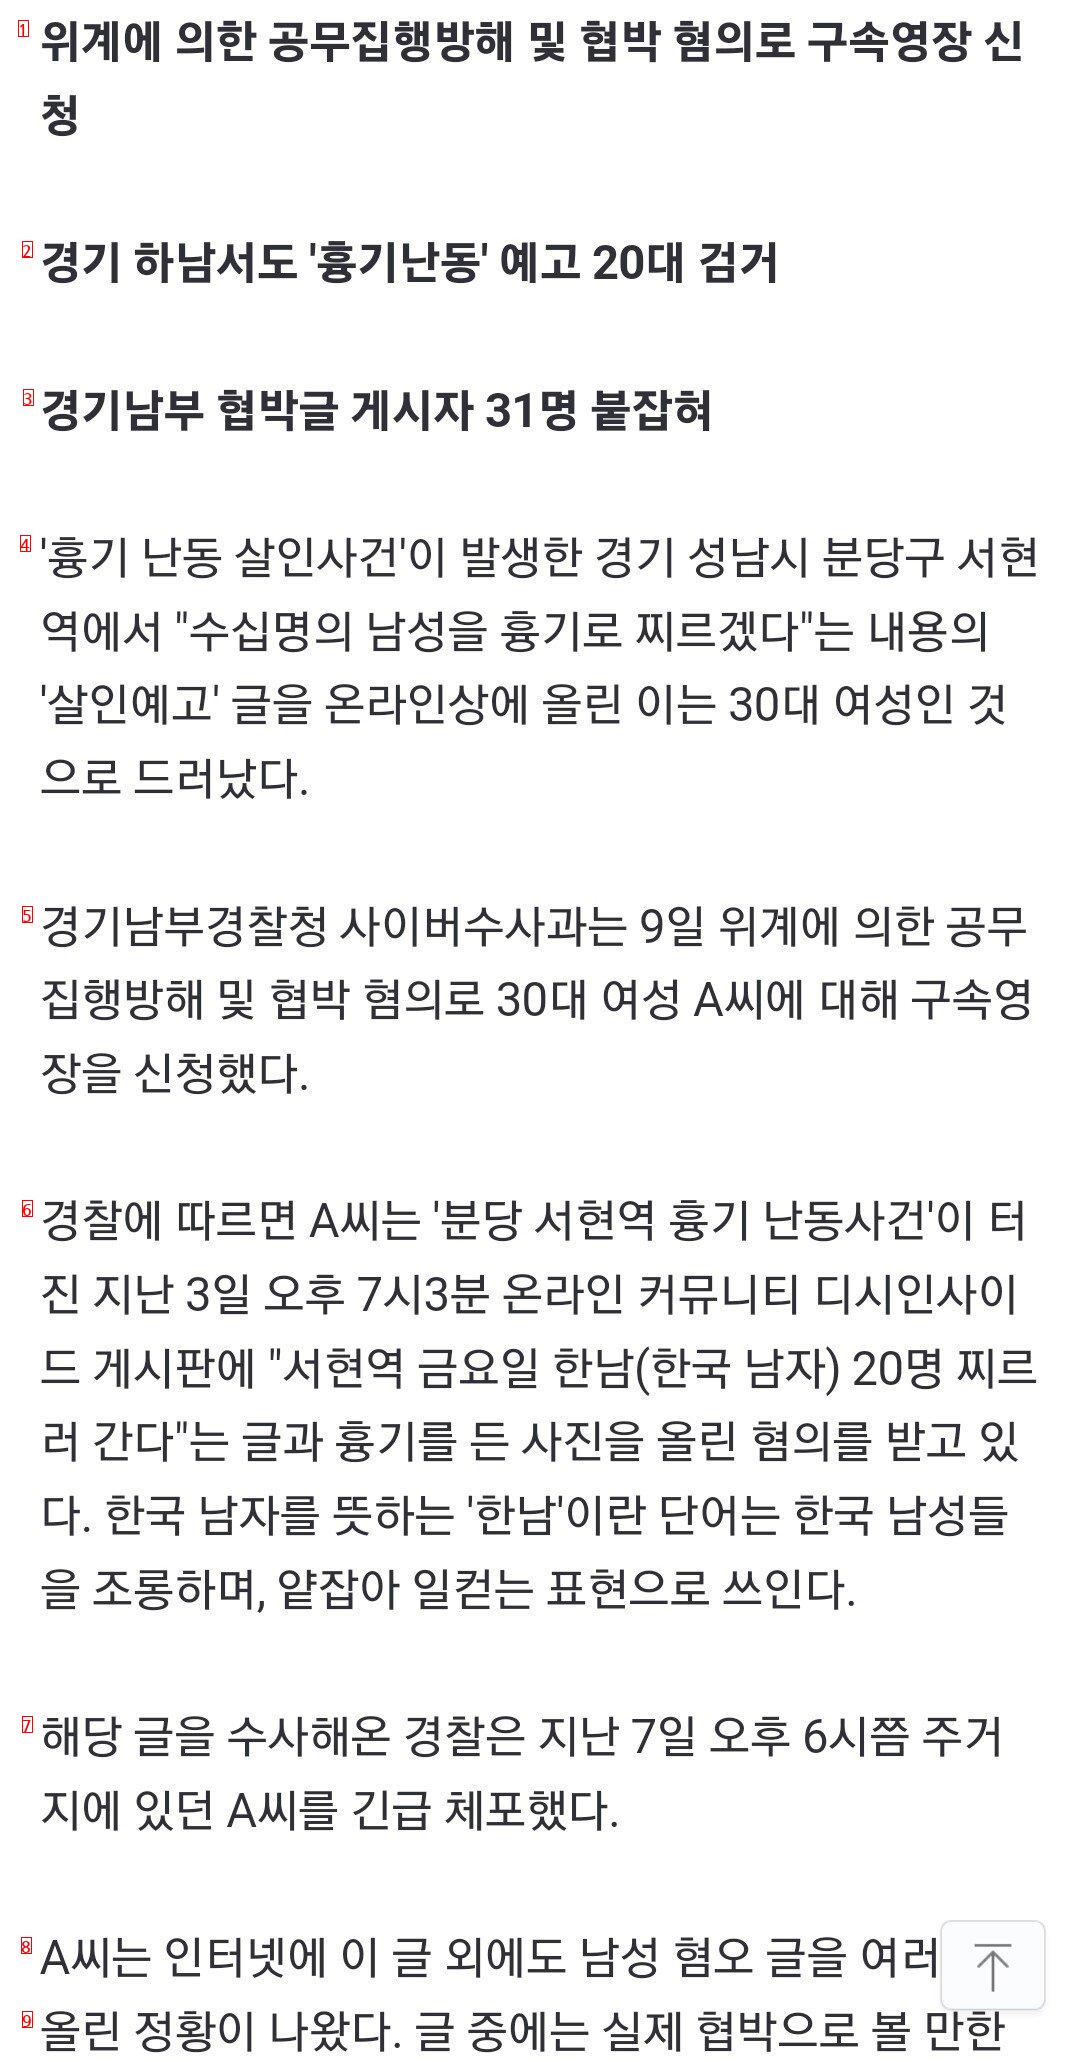 뉴스) 서현역서 한남 찌르겠다...30대 여성 구속 영장